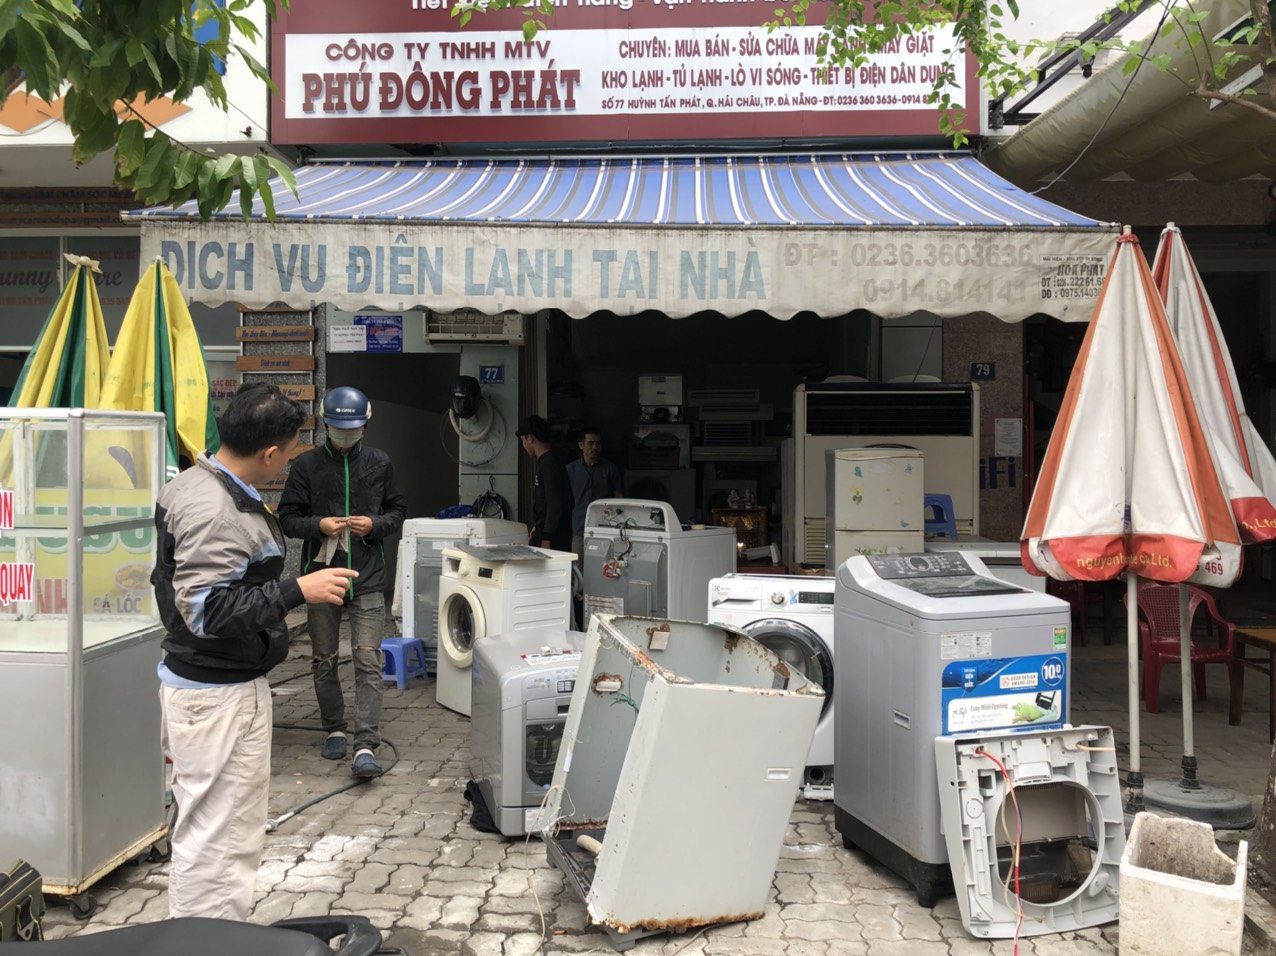 Dịch vụ sửa máy giặt Đà Nẵng tại Phú Đông Phát nhận sửa chữa tất cả lỗi hỏng hóc của máy giặt